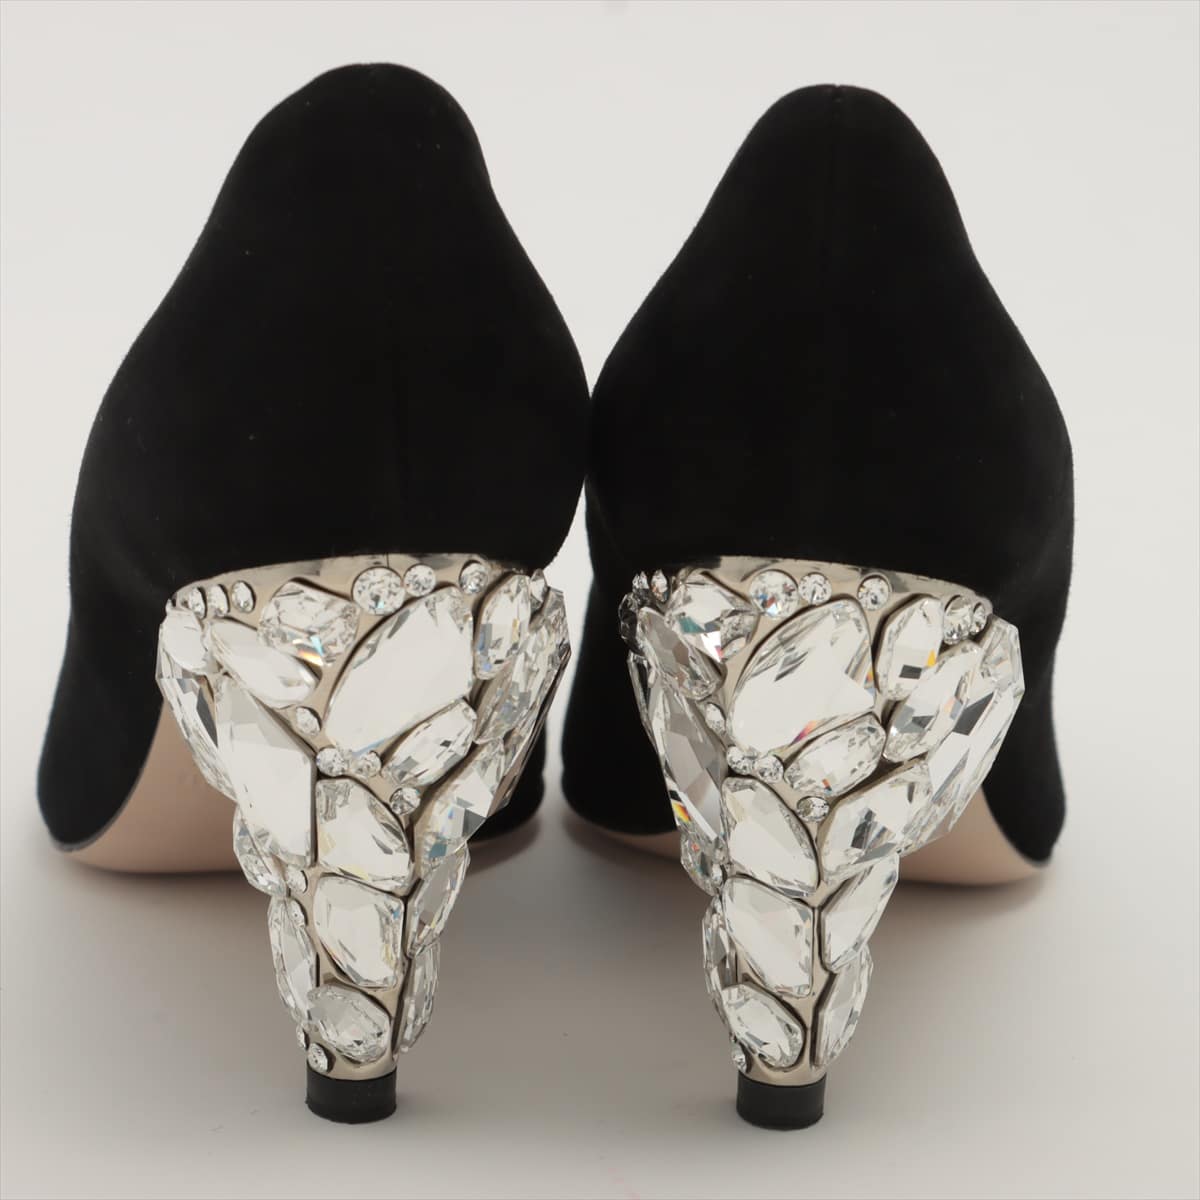 Miu Miu Suede Pumps 35 Ladies' Black crystal heels Bijou